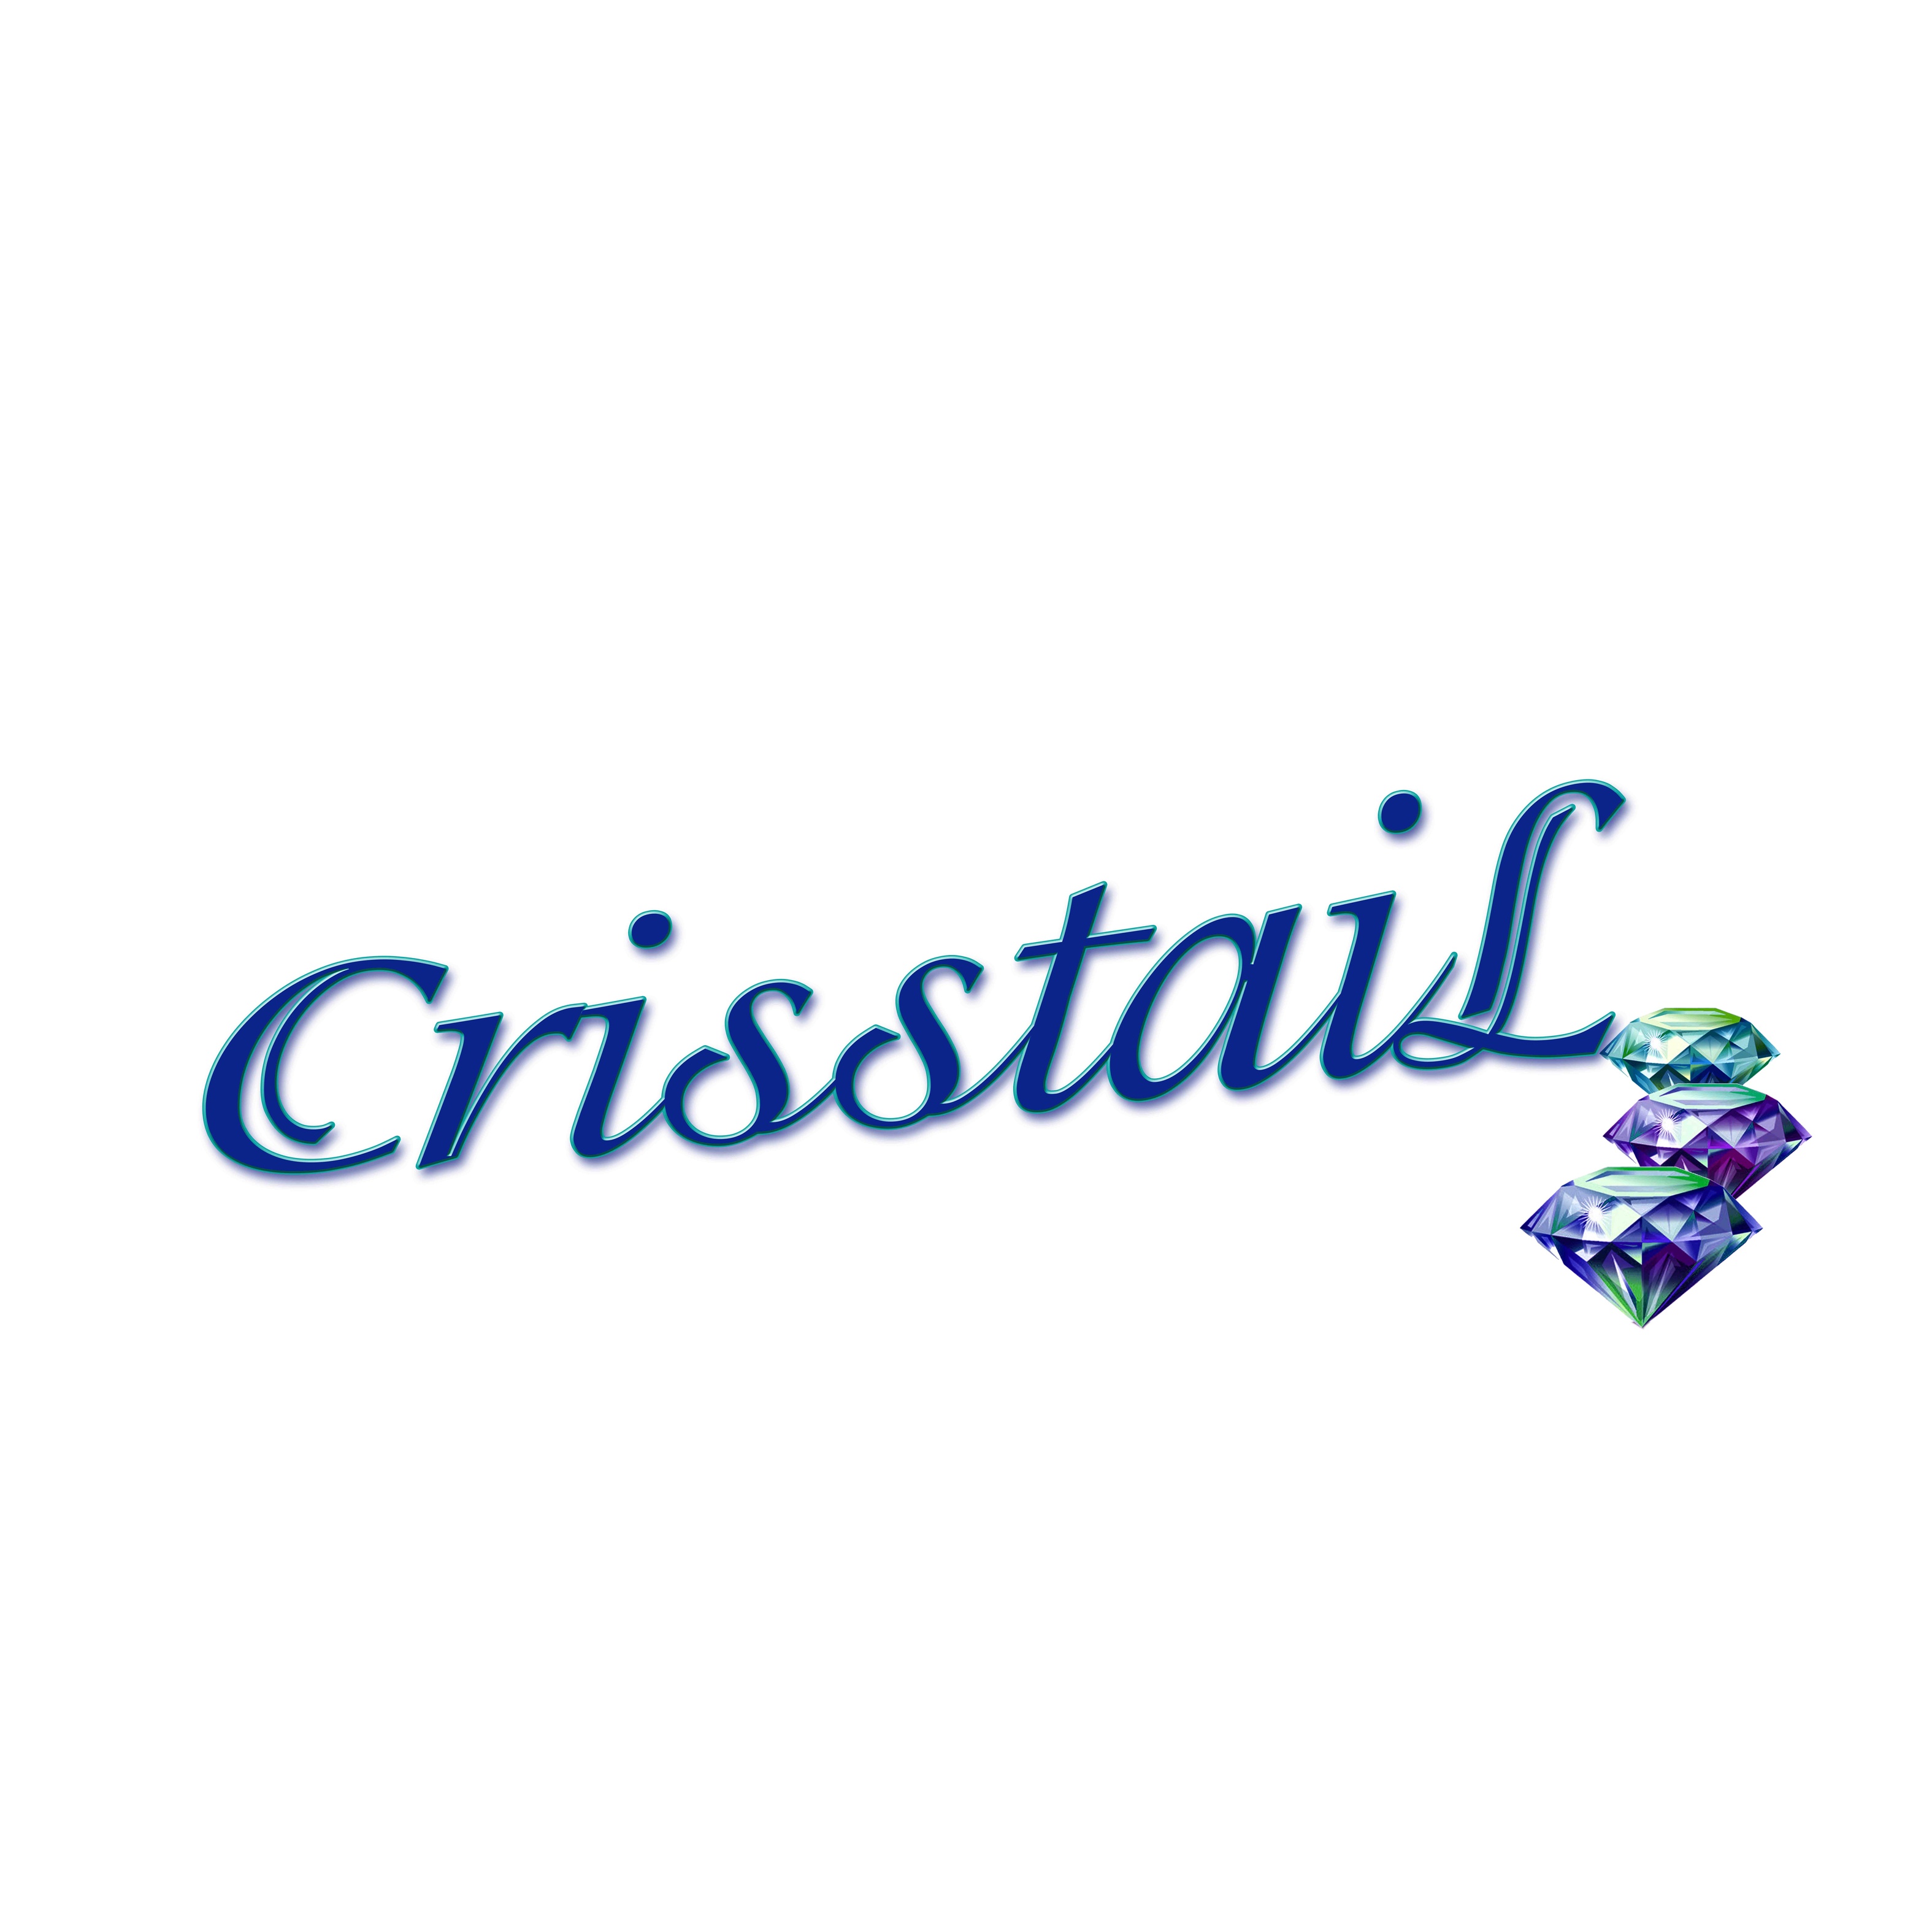 CrisstaiL